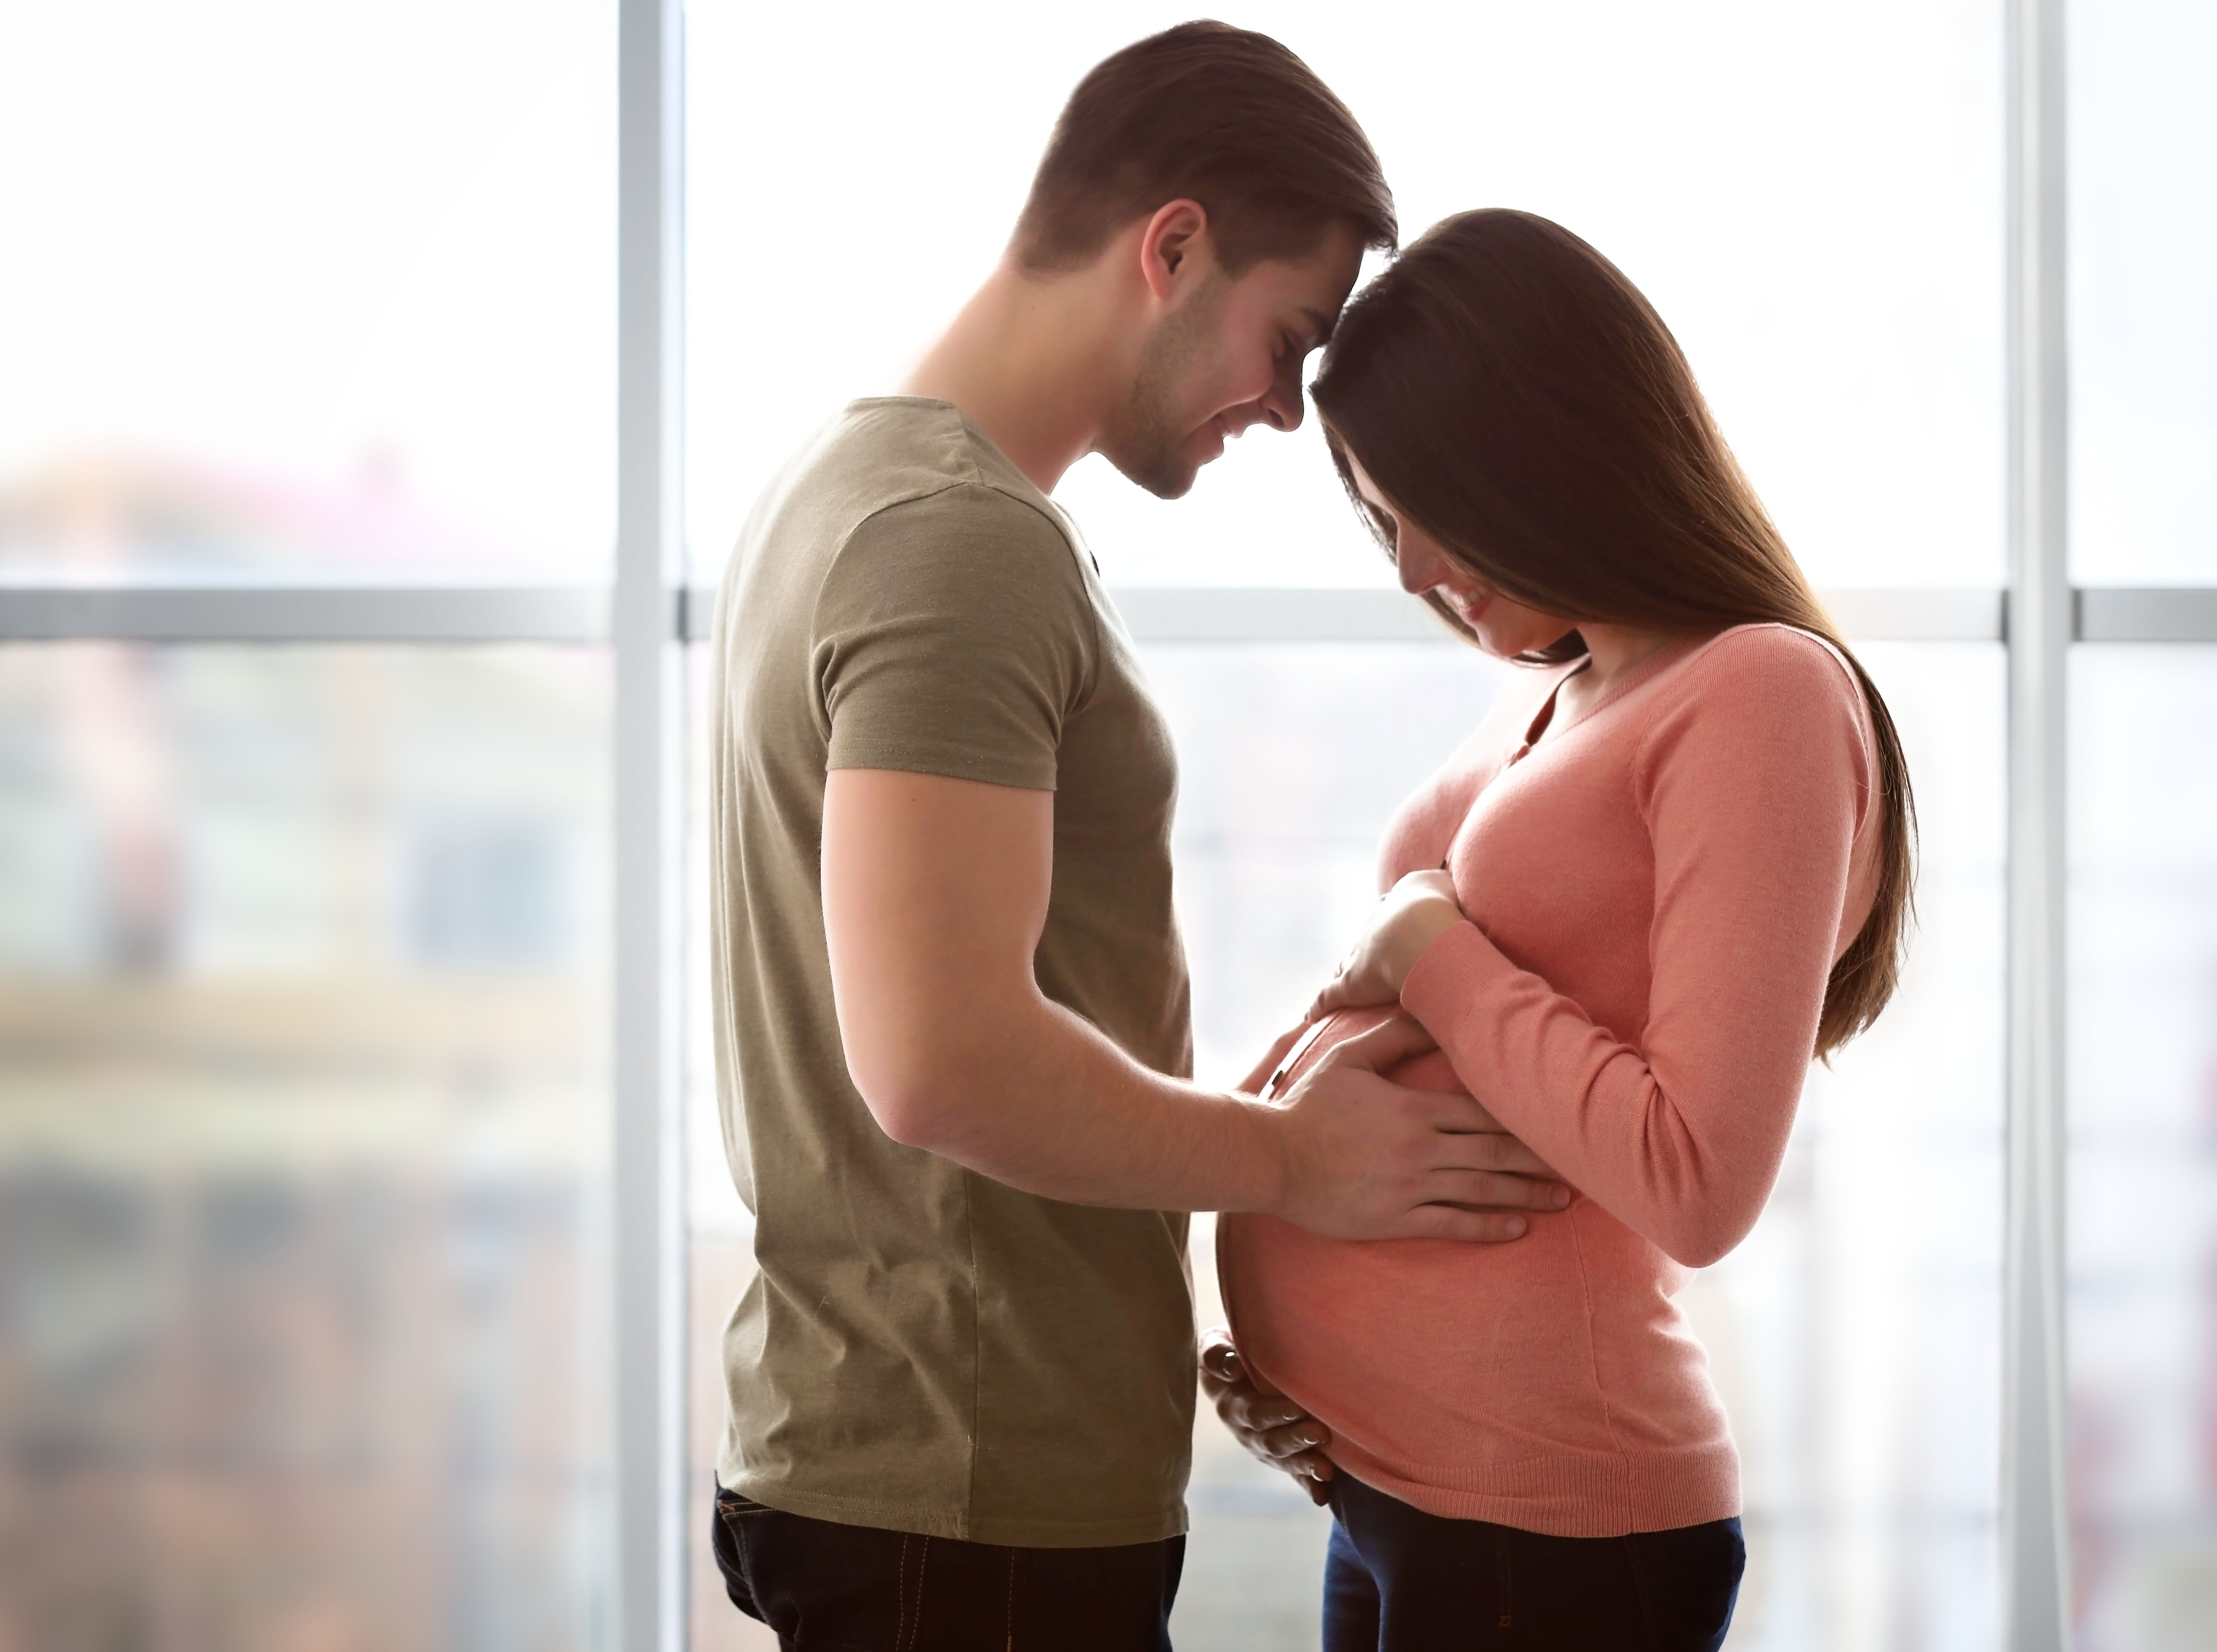 Eine Frau schaut auf ihren schwangeren Bauch hinunter, während ihr Mann seine Stirn auf ihrer ruht | Quelle: Shutterstock